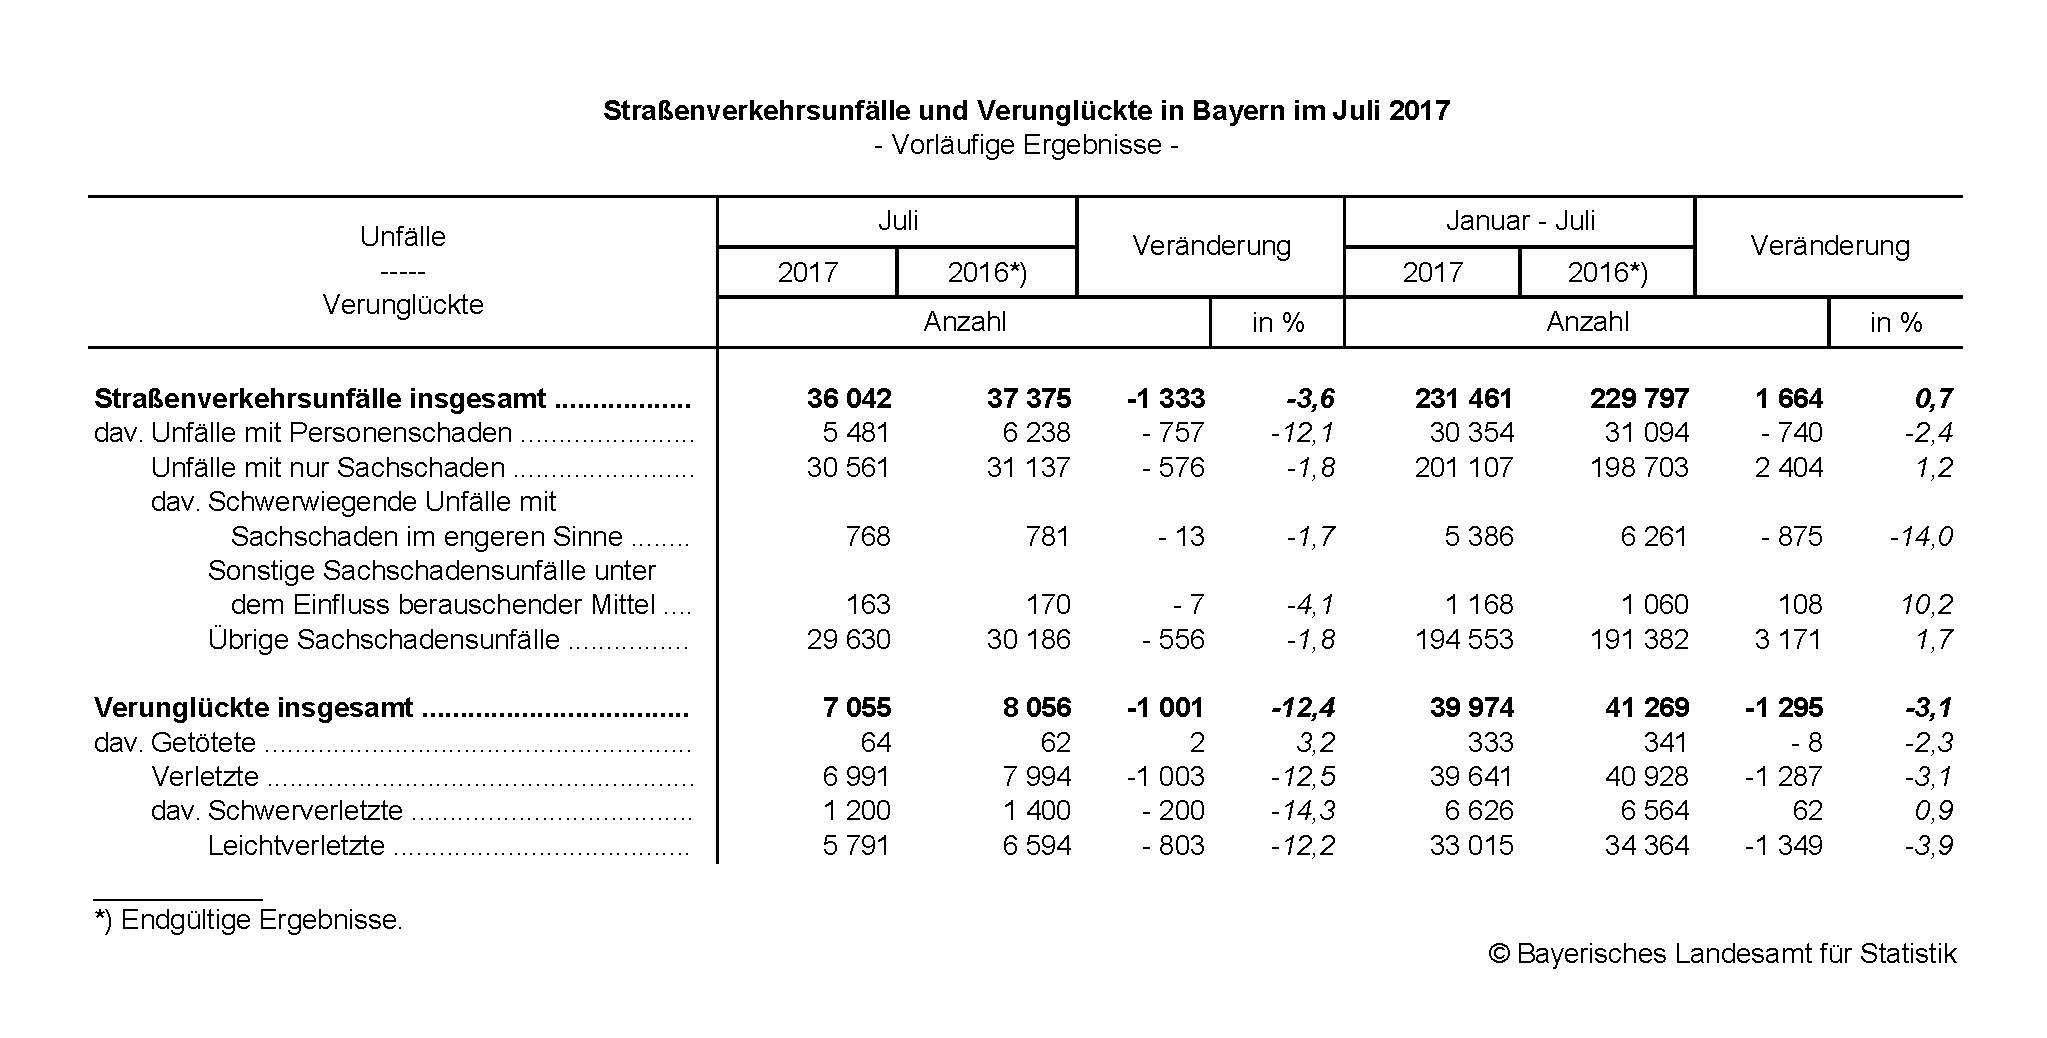 Straßenverkehrsunfälle und Verunglückte in Bayern im Juli 2017